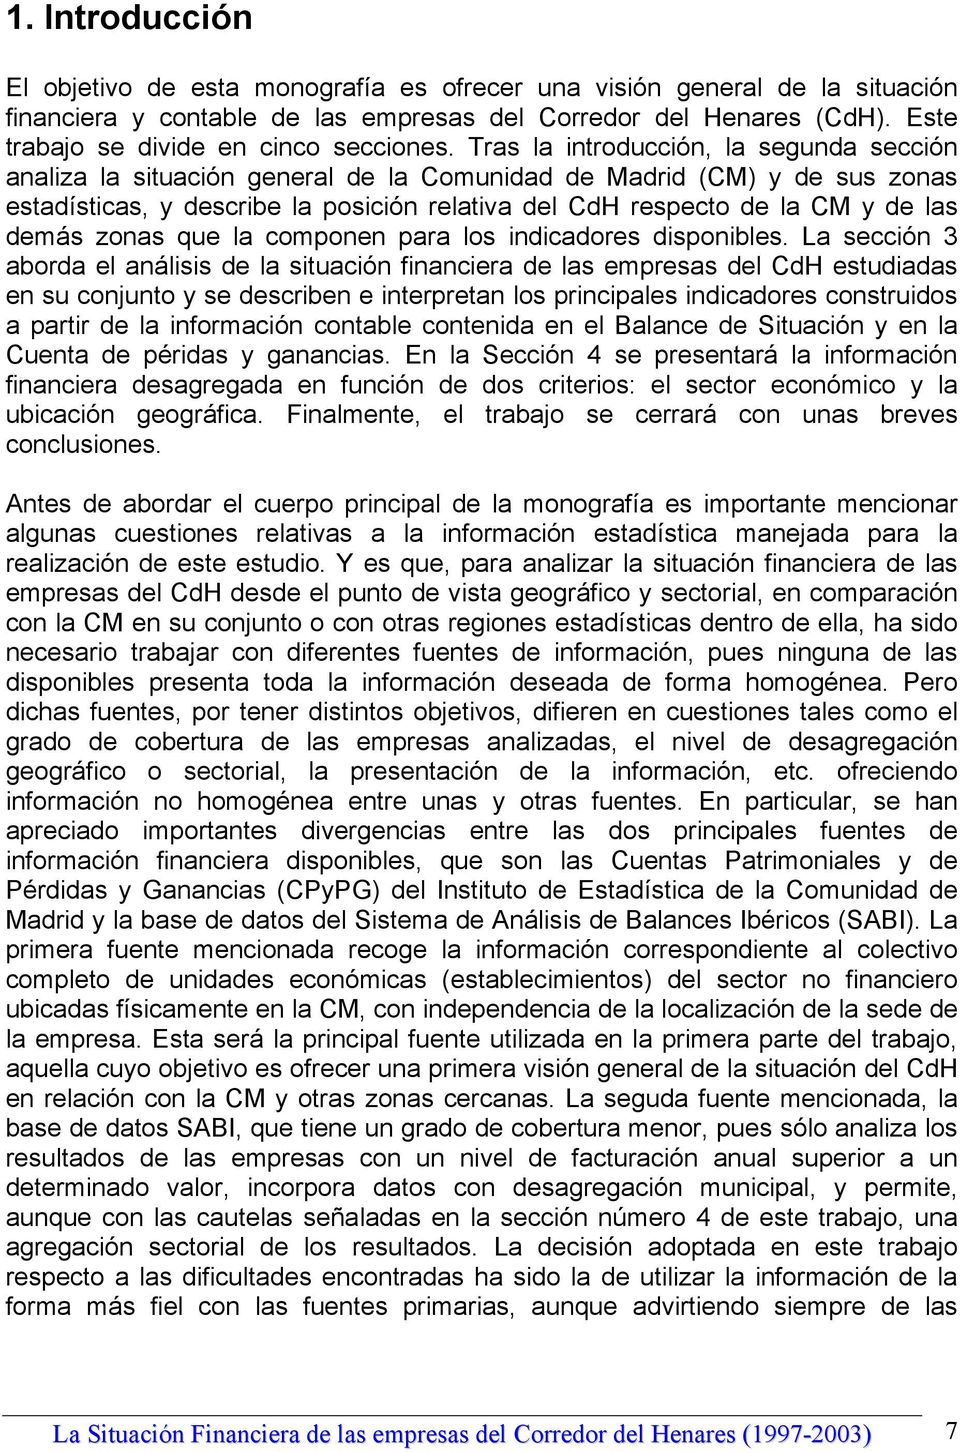 Tras la introducción, la segunda sección analiza la situación general de la Comunidad de Madrid (CM) y de sus zonas estadísticas, y describe la posición relativa del CdH respecto de la CM y de las